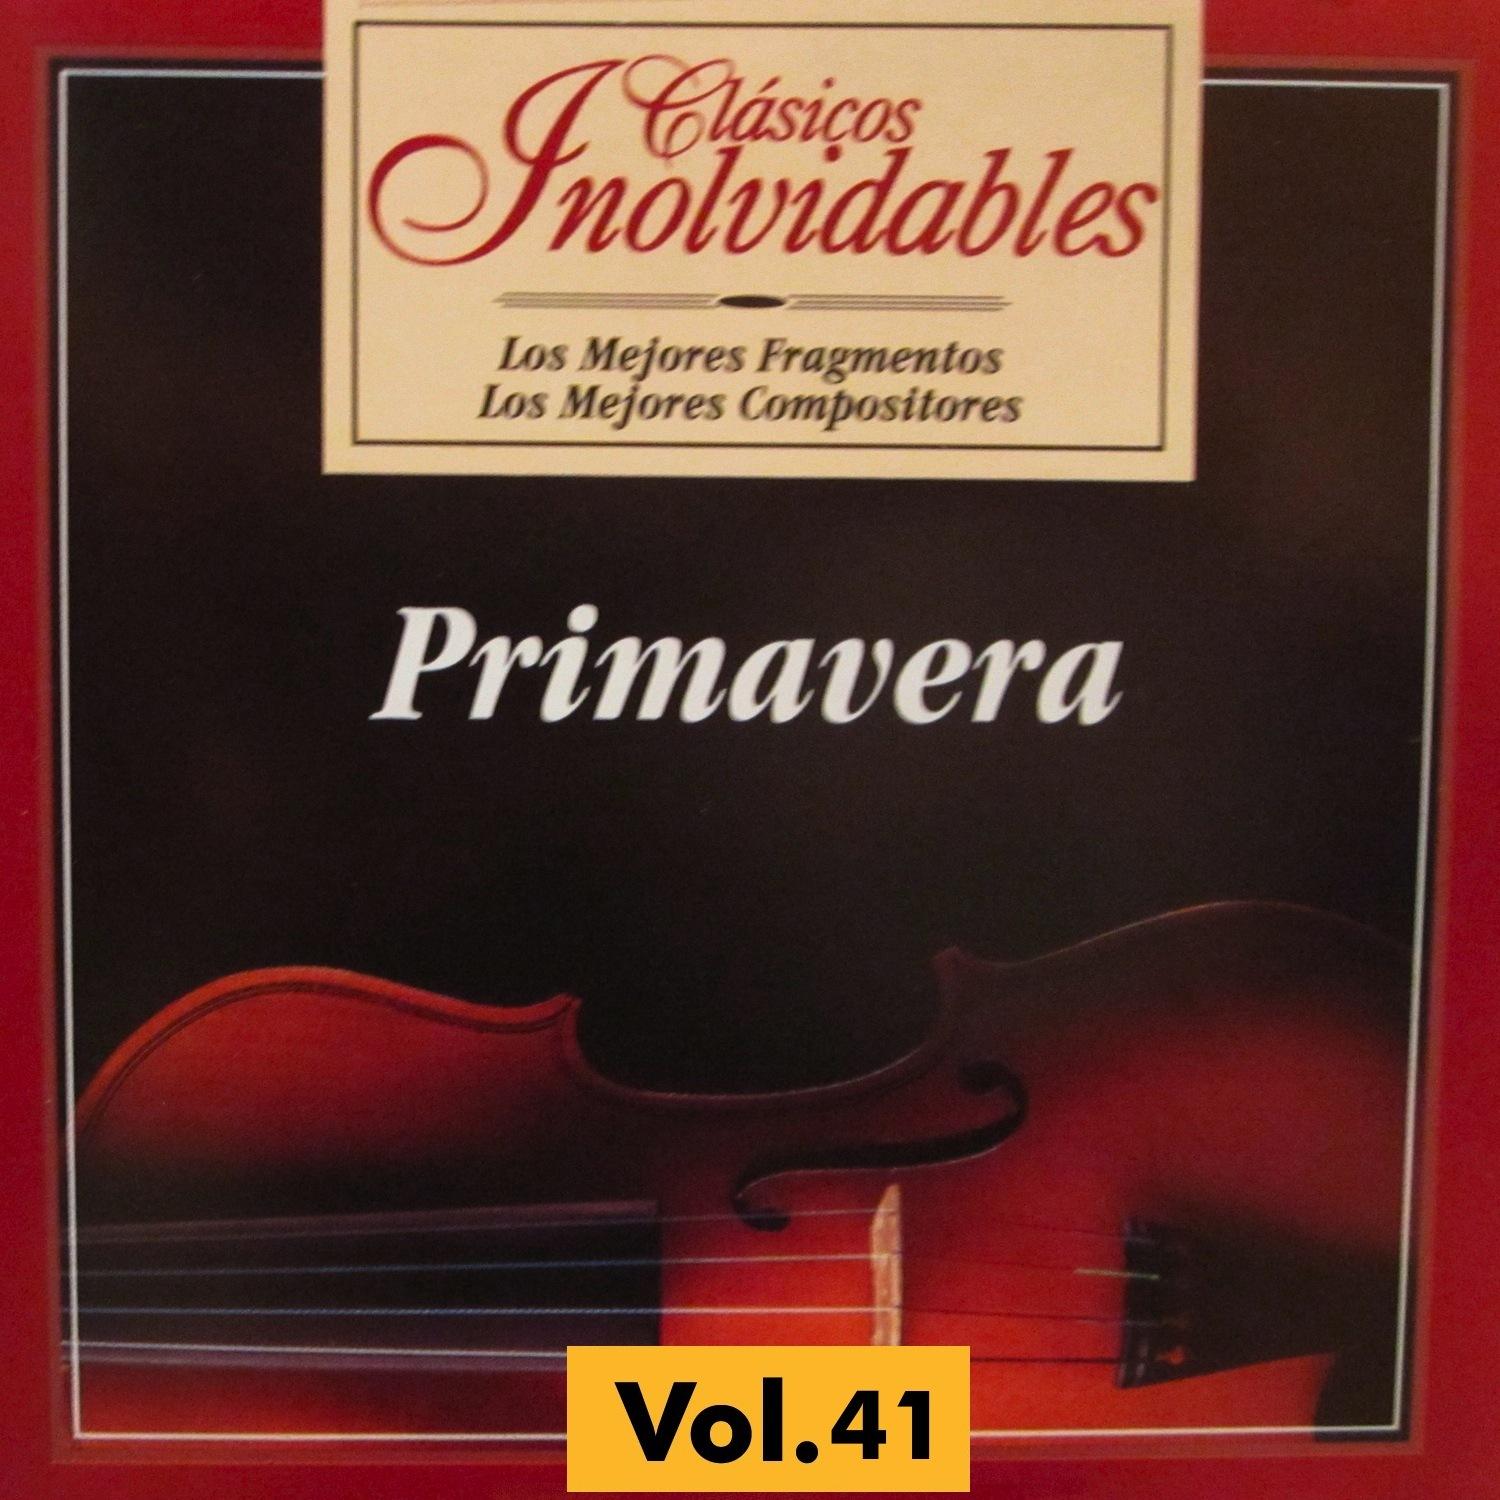 Sonata for violin and piano No. 5 Op. 24: I. Allegro